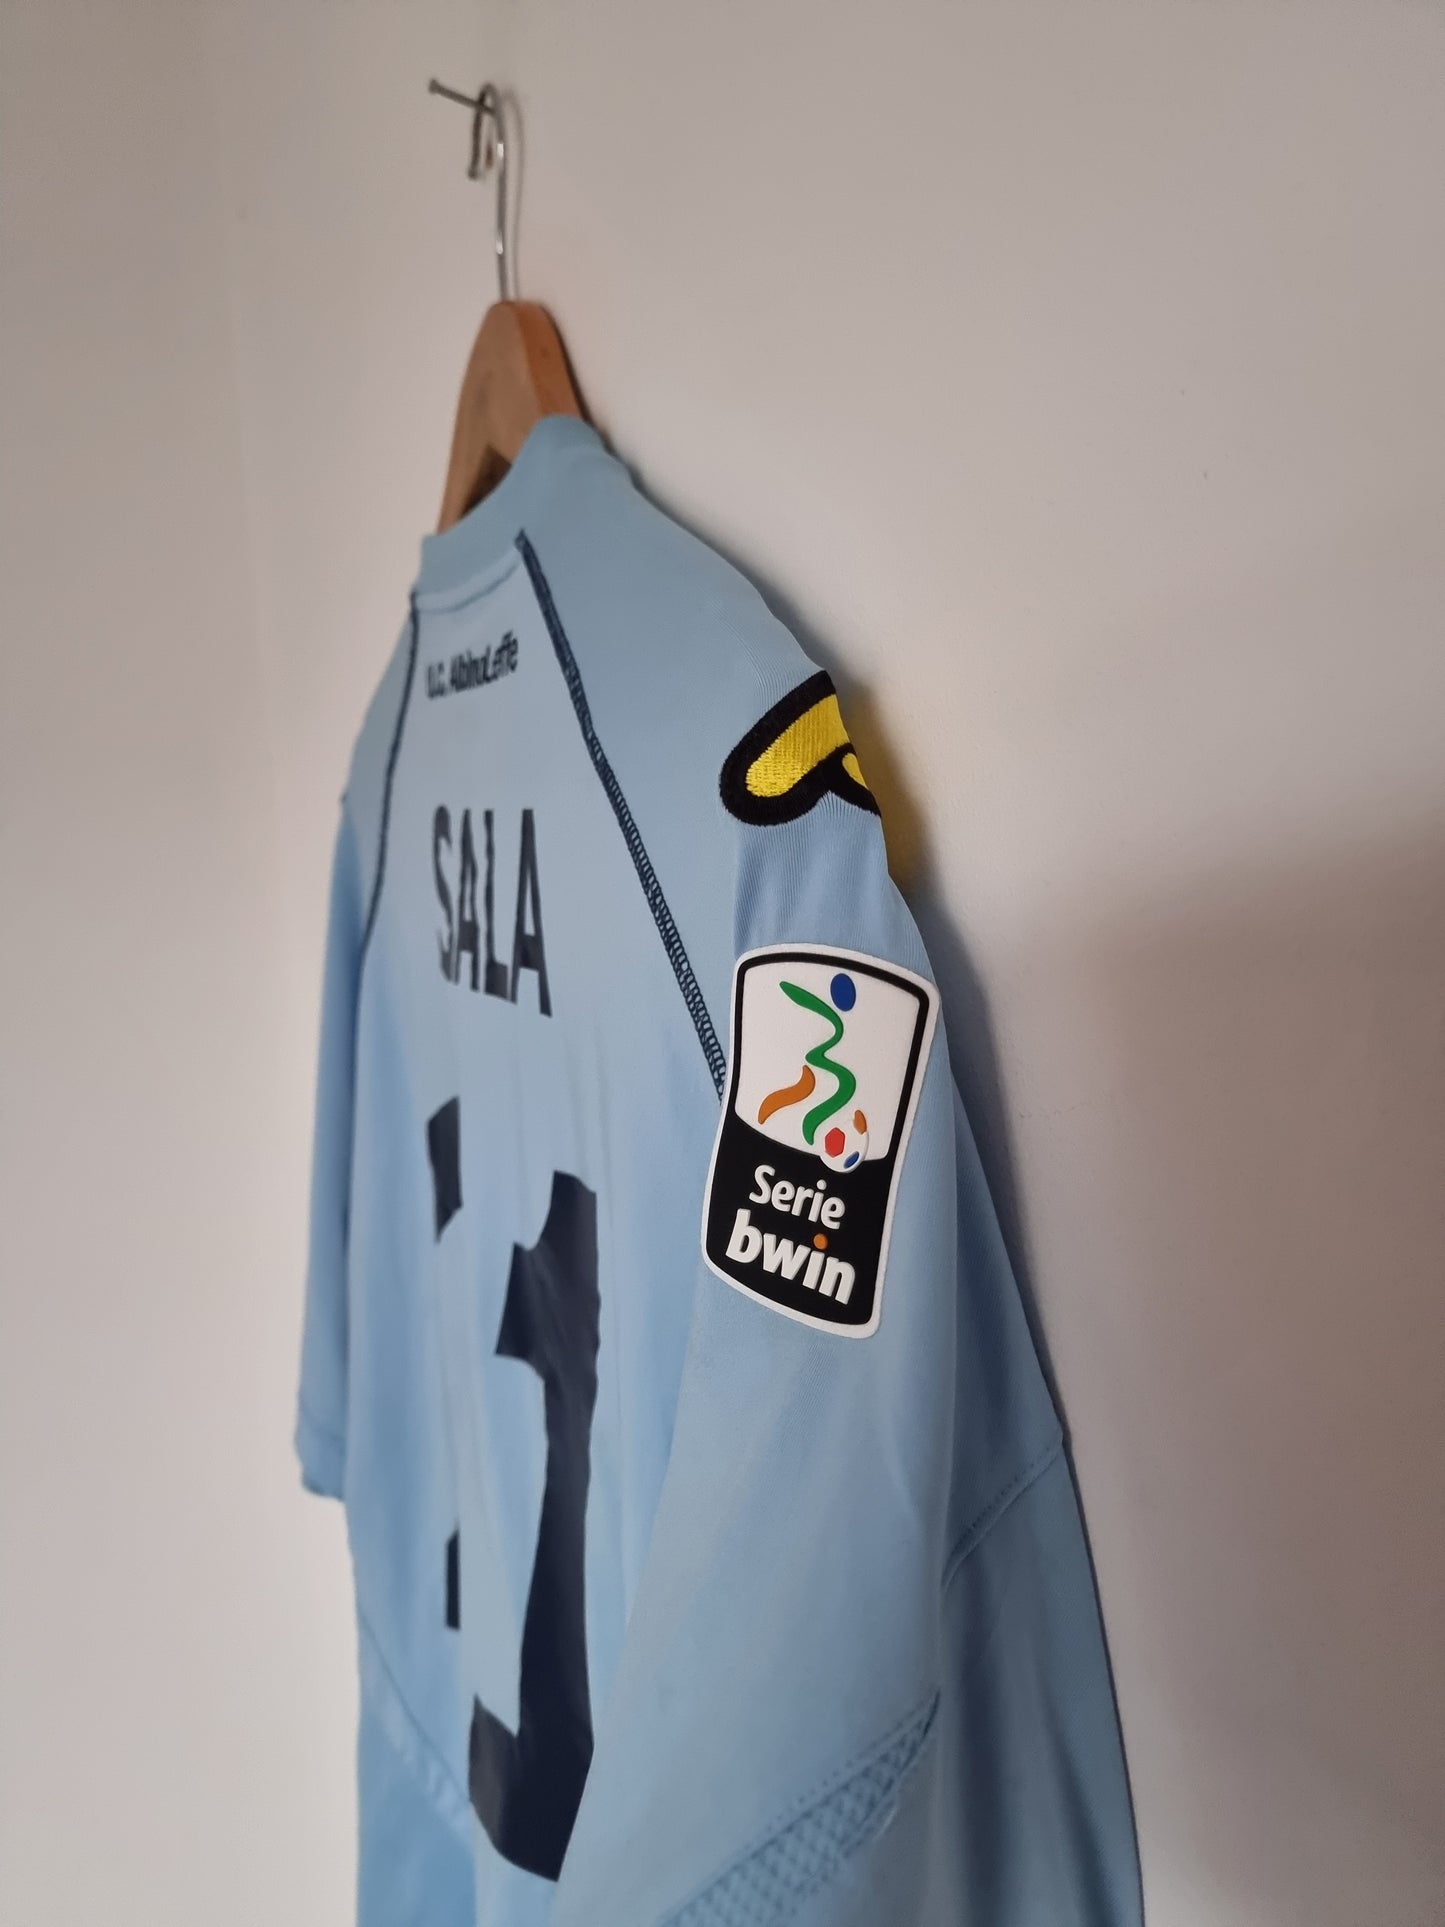 Acerbis Albinoleffe 10/11 'Sala 21' Match Issue Home Shirt XL